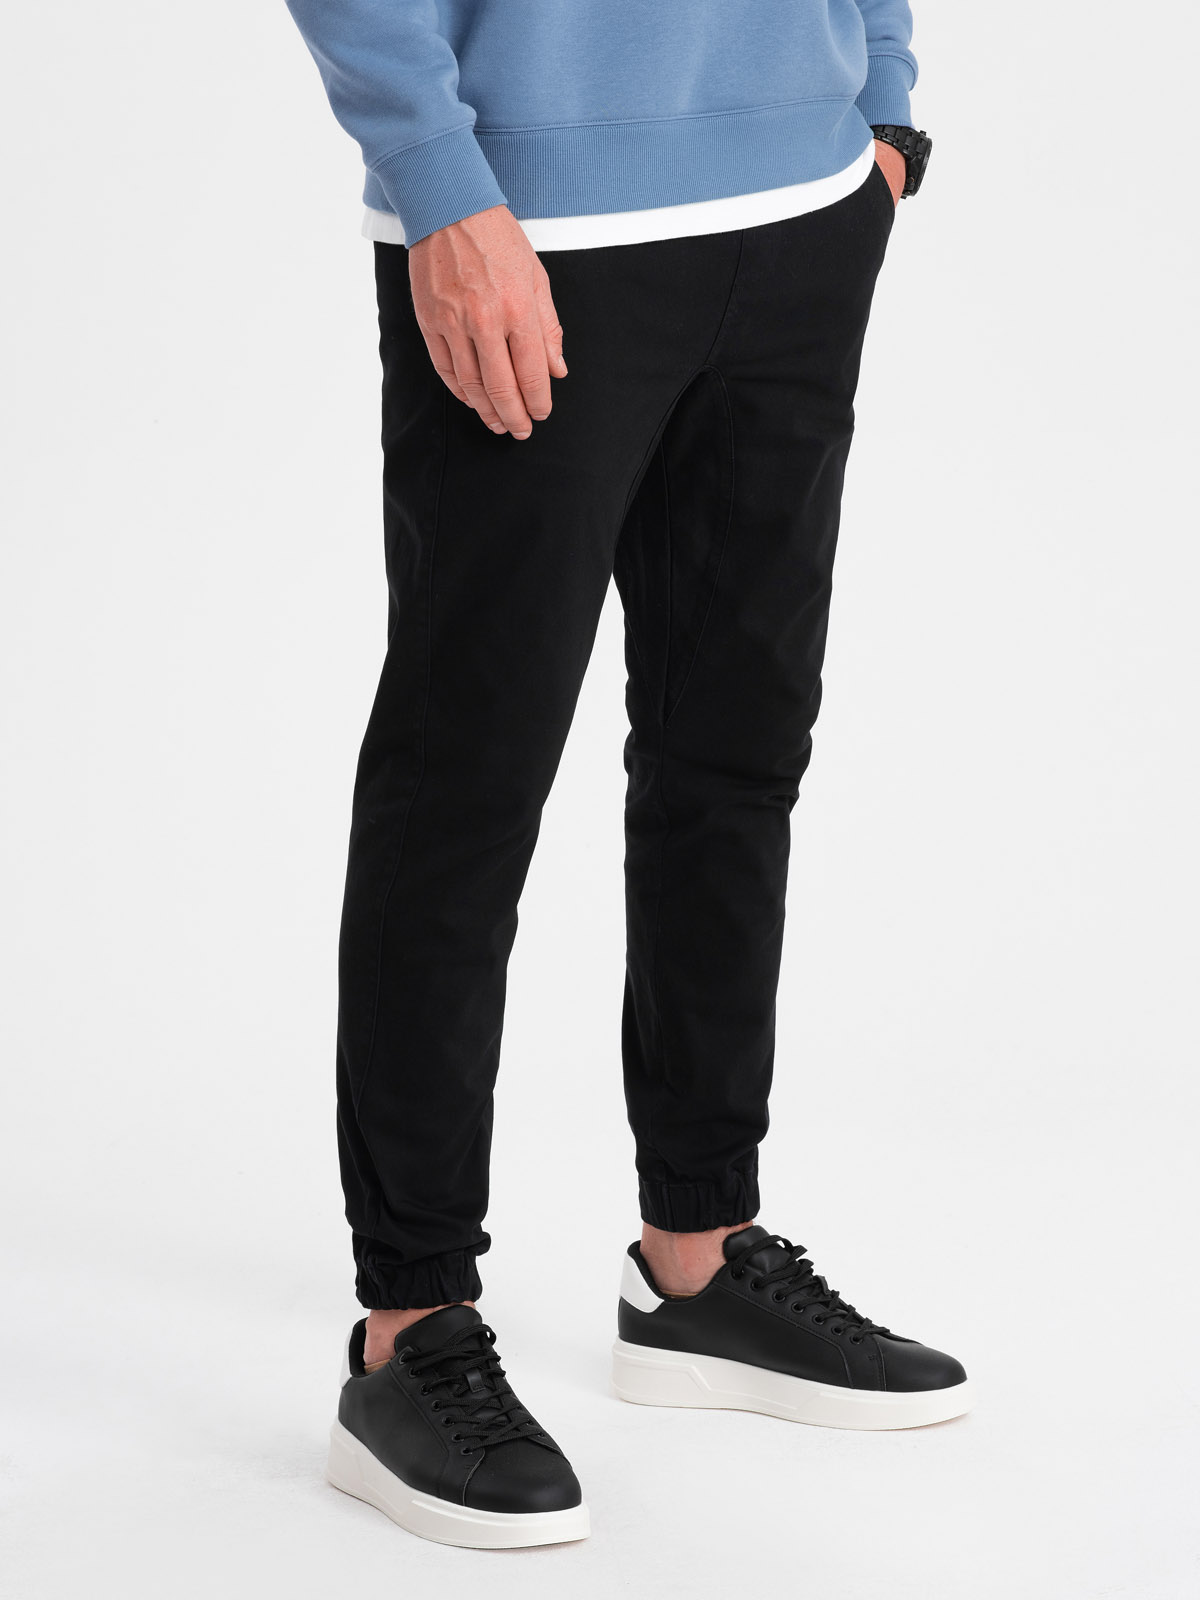 Men's pants joggers P885 - black | MODONE wholesale - Clothing For Men